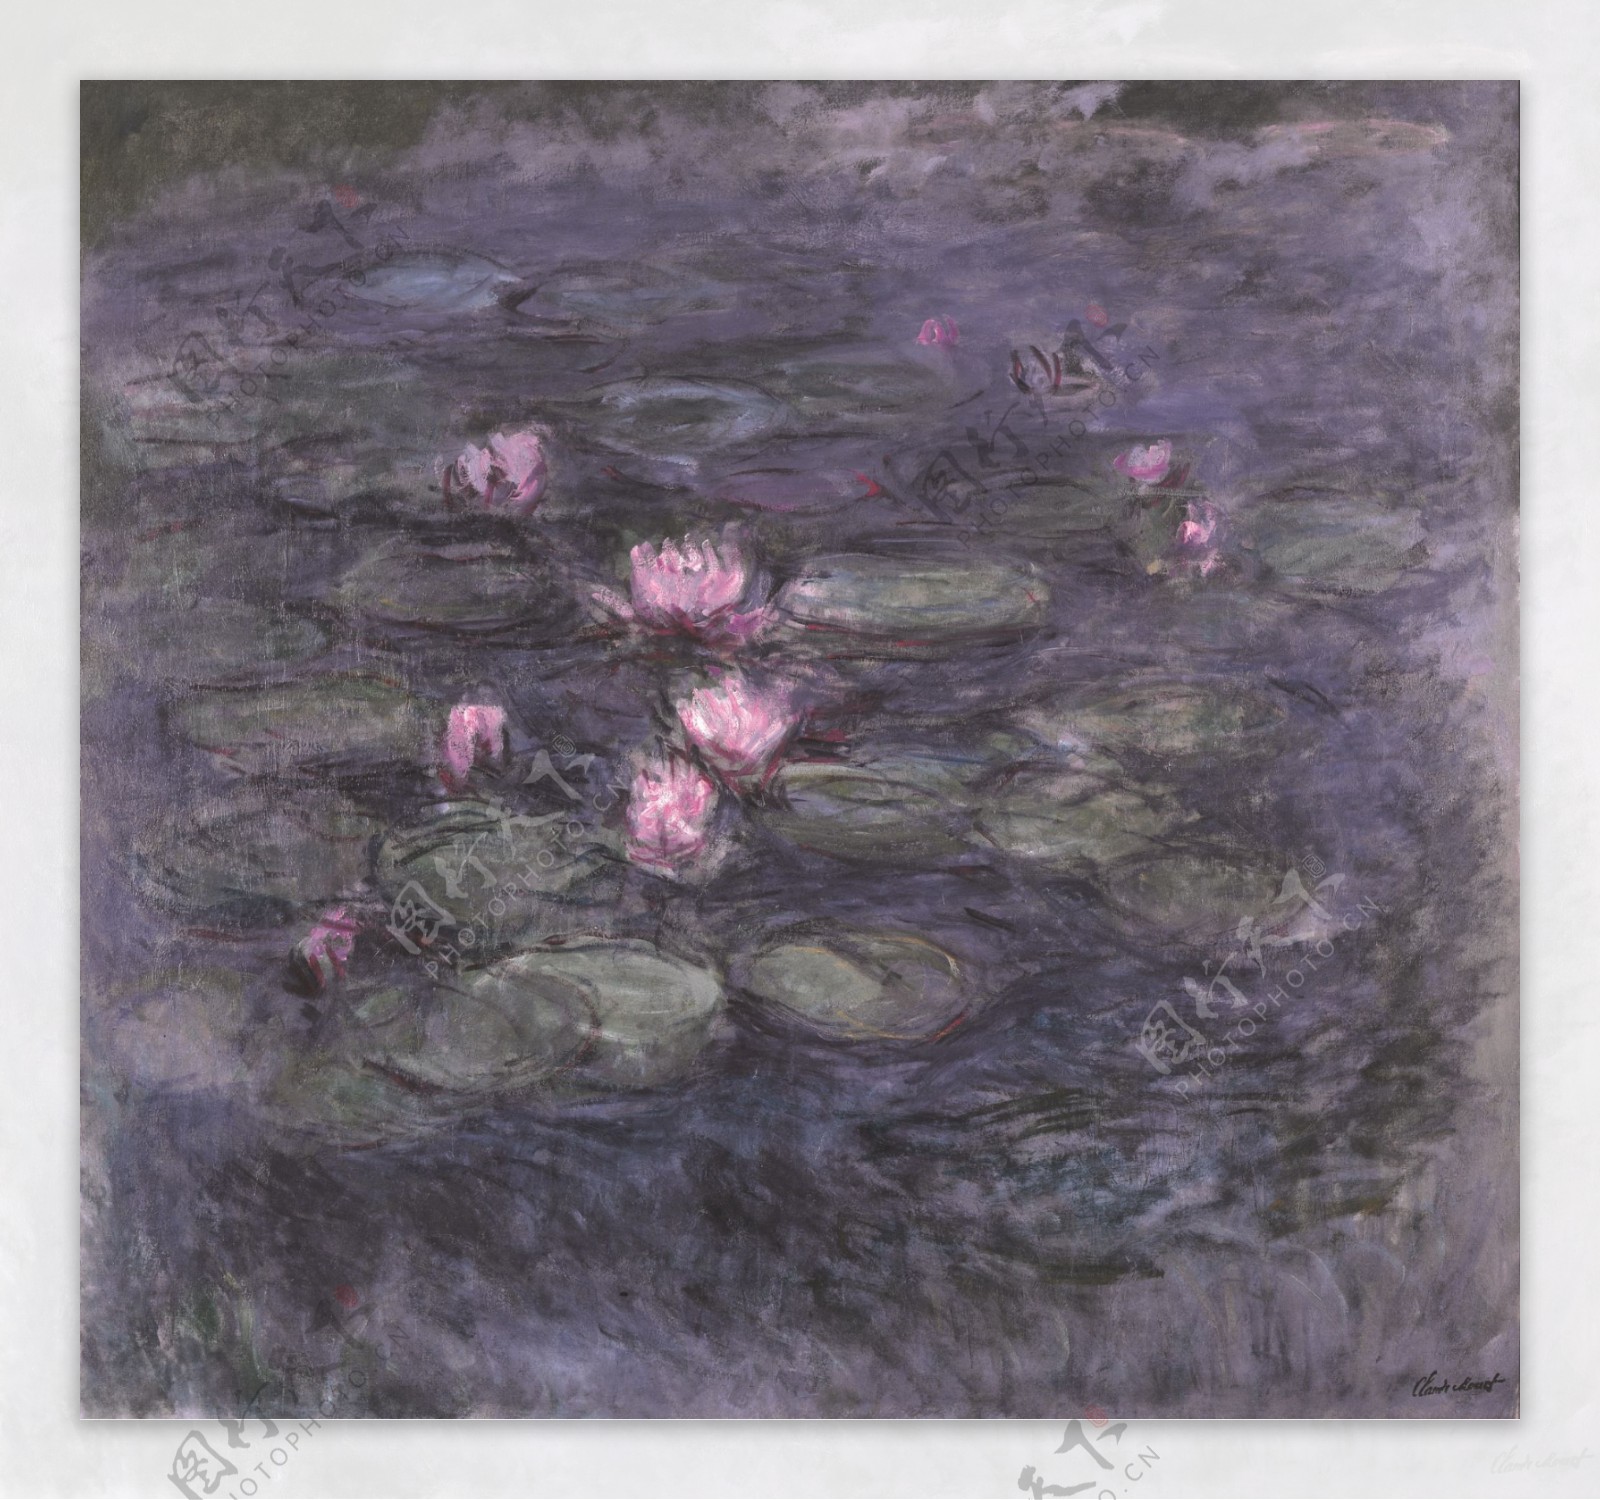 WaterLilies1914风景建筑田园植物水景田园印象画派写实主义油画装饰画